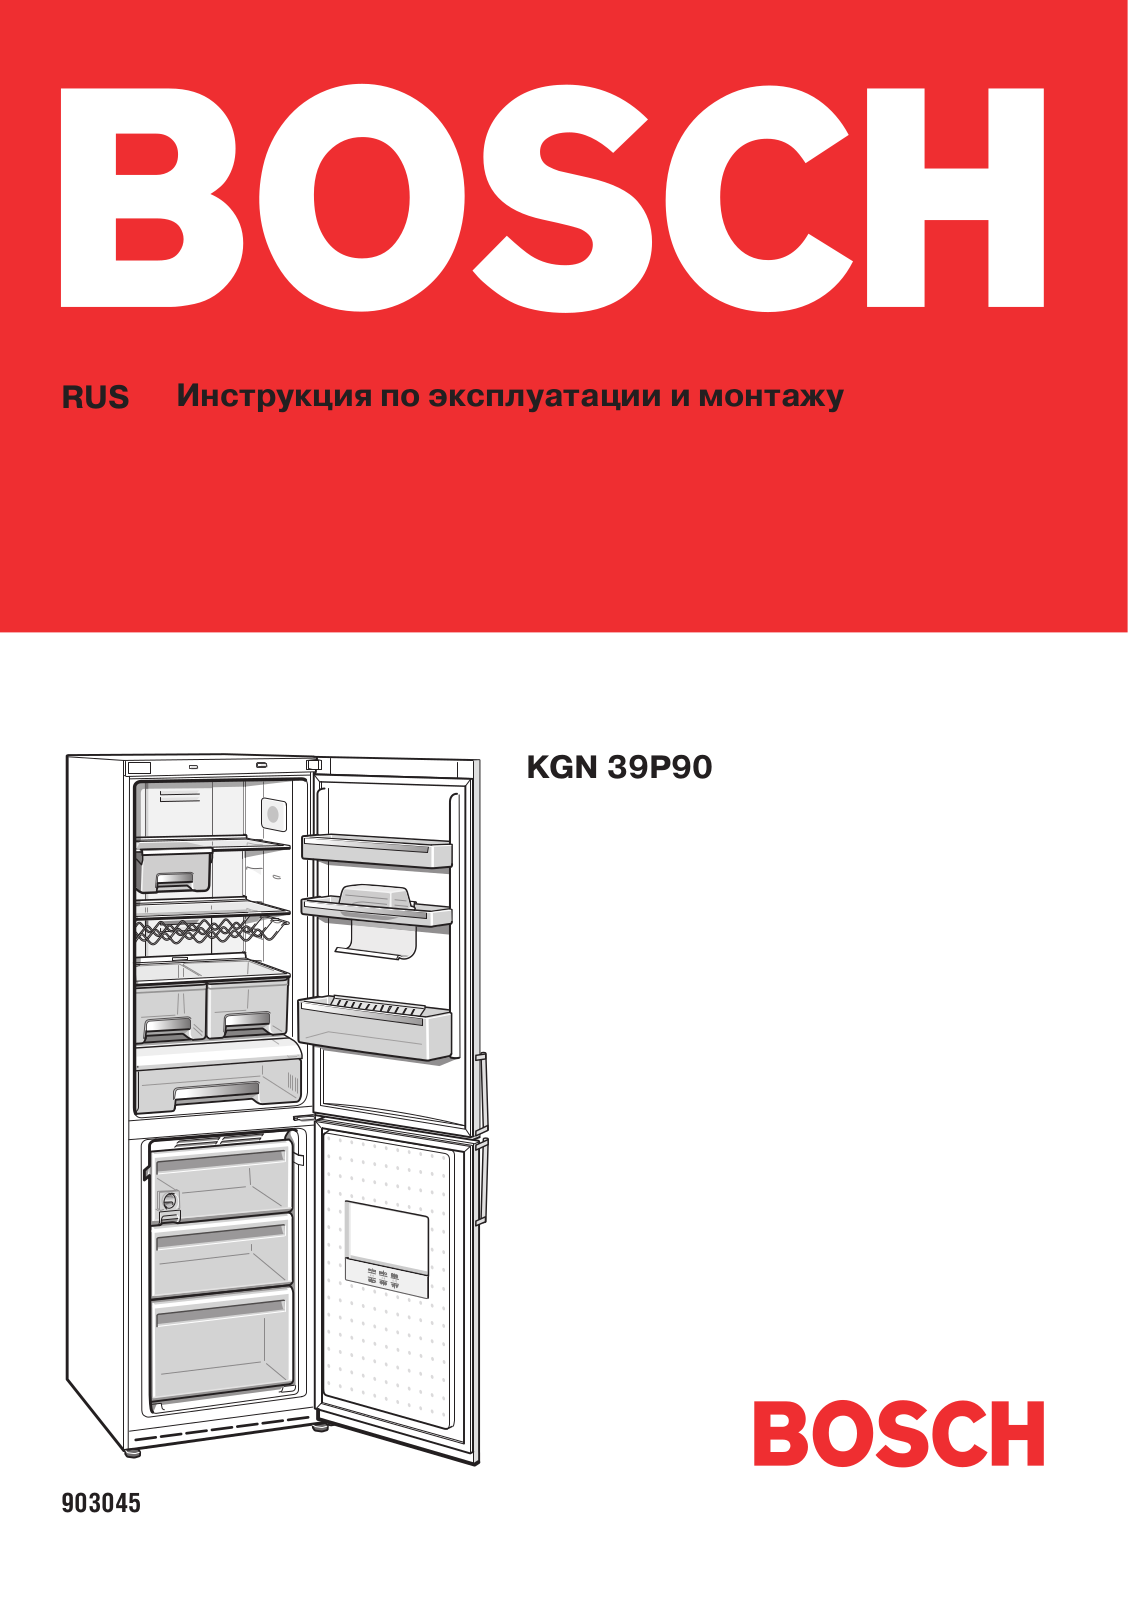 Bosch KGN 39P90 User Manual